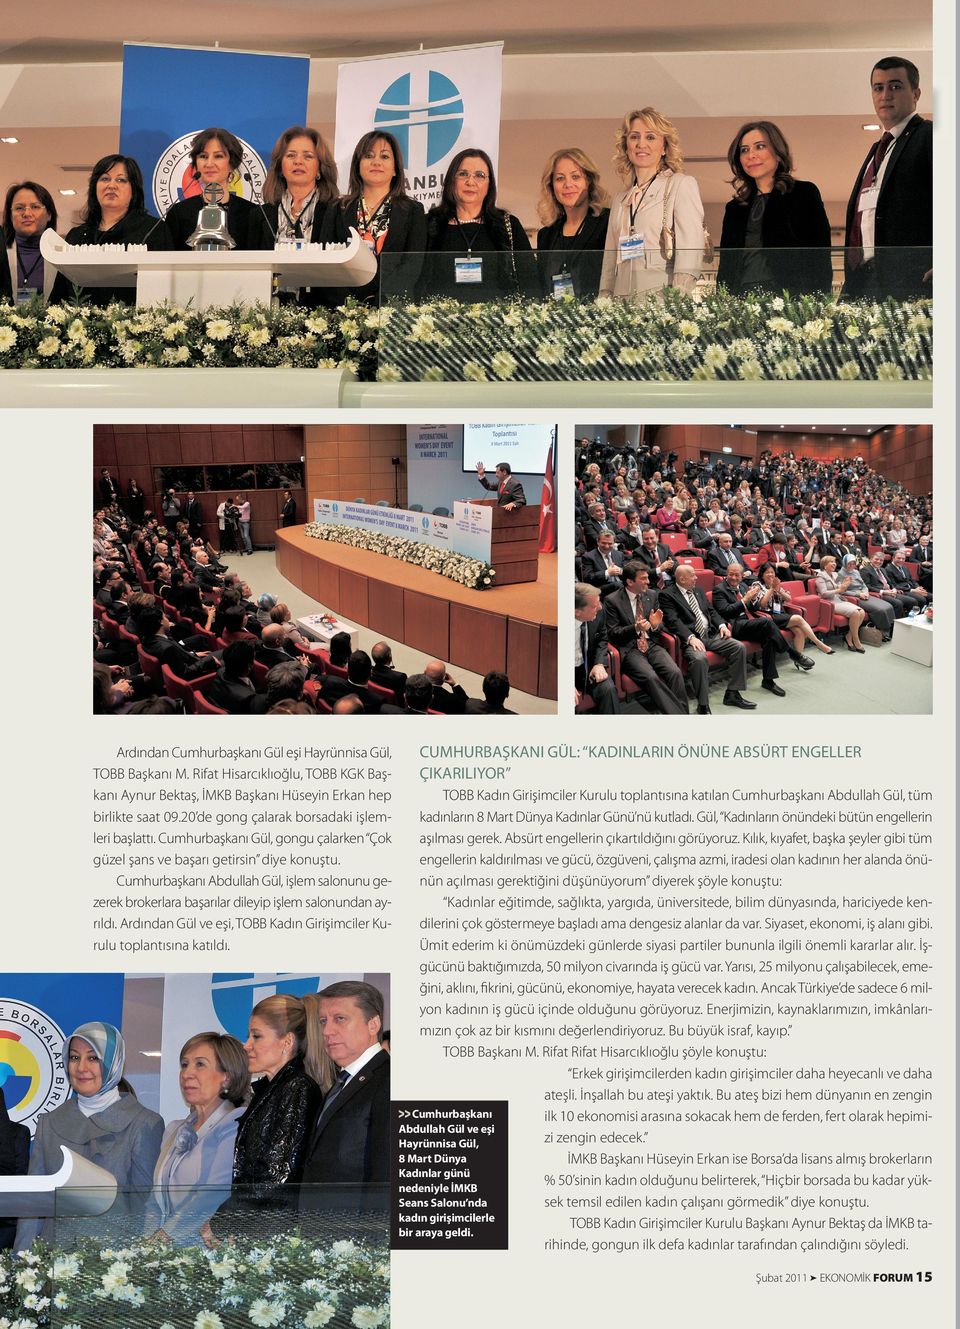 Cumhurbaşkanı Abdullah Gül, işlem salonunu gezerek brokerlara başarılar dileyip işlem salonundan ayrıldı. Ardından Gül ve eşi, TOBB Kadın Girişimciler Kurulu toplantısına katıldı.